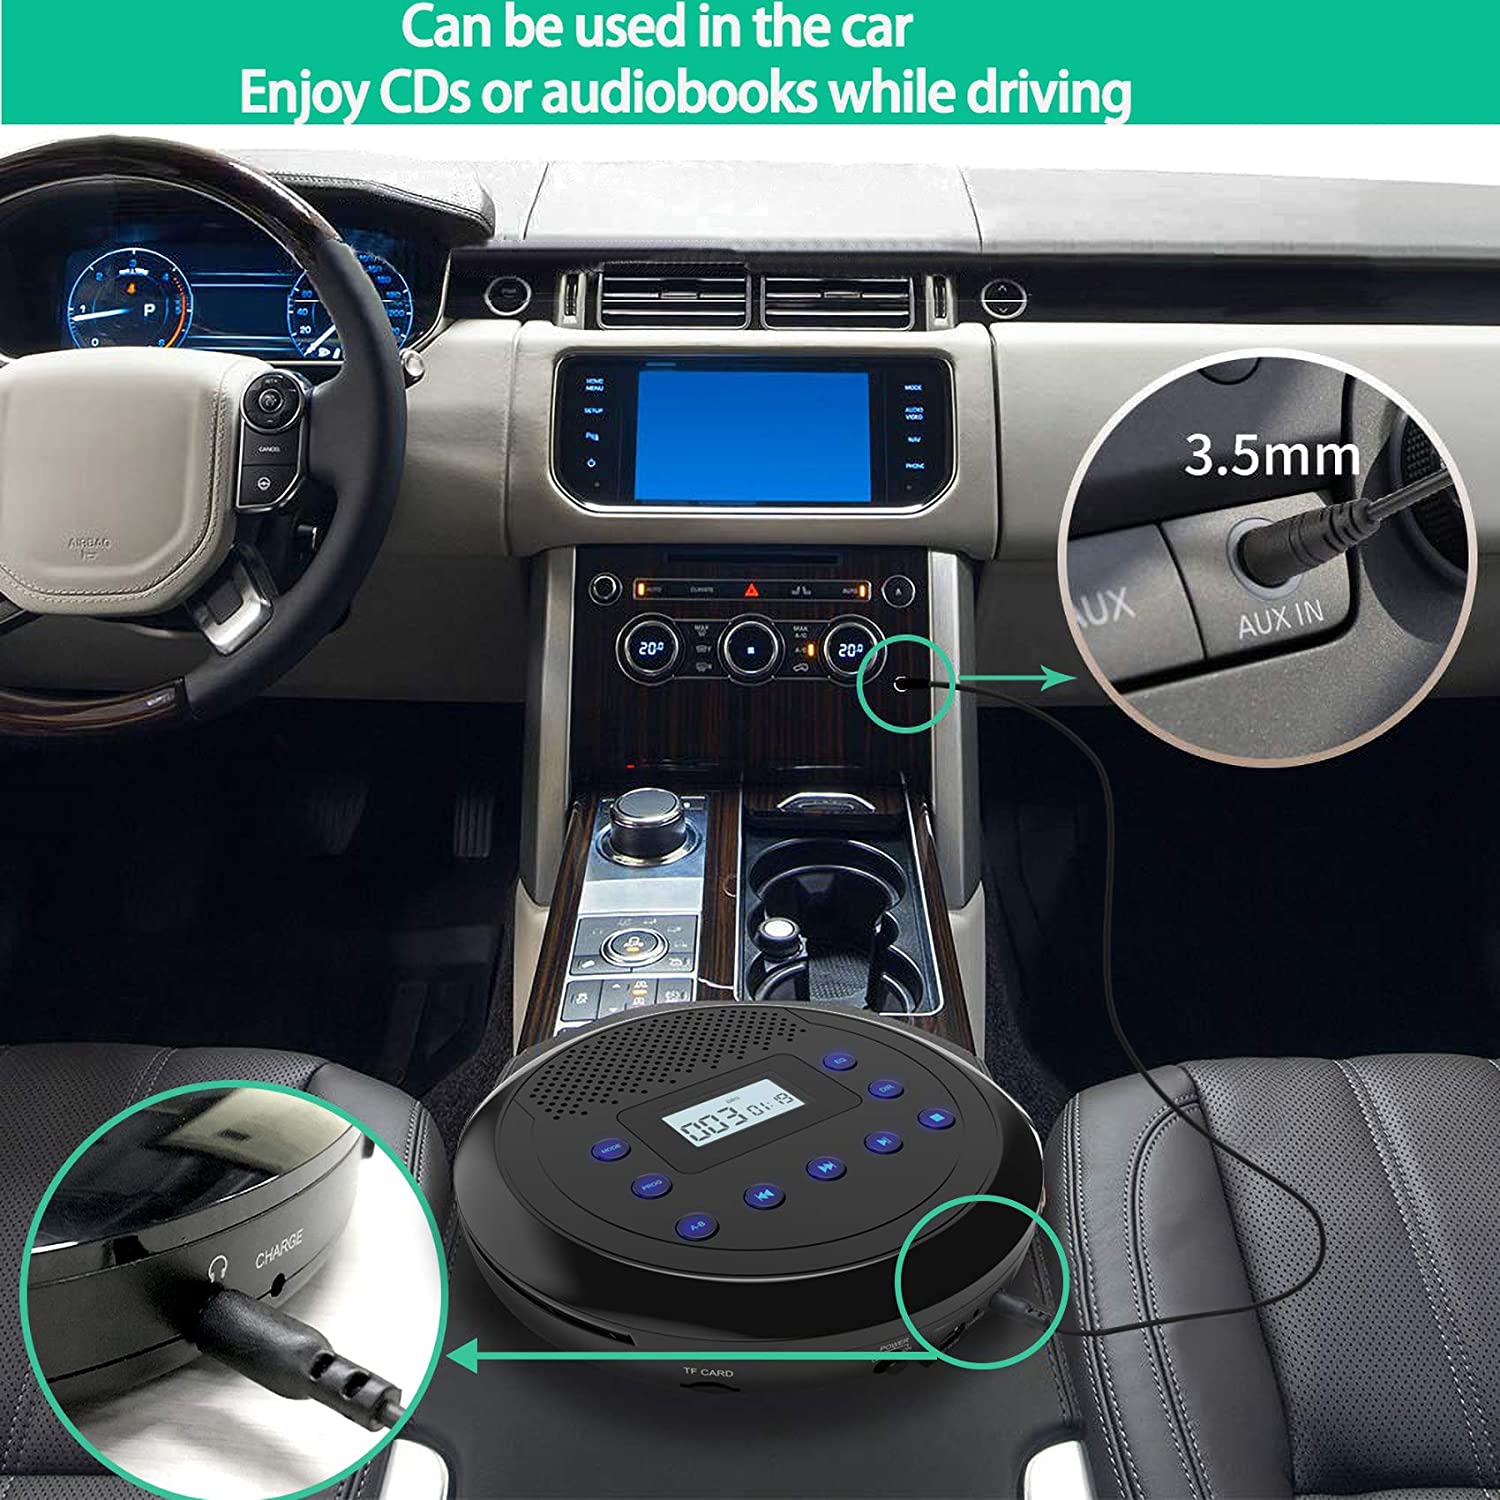 Lecteur CD portatif, MONODEAU lecteur CD portatif rechargeable avec  haut-parleurs intégrés, lecteur CD Walkman pour l'auto et l'usage  personnel, lecteur CD anti-saut avec écouteurs